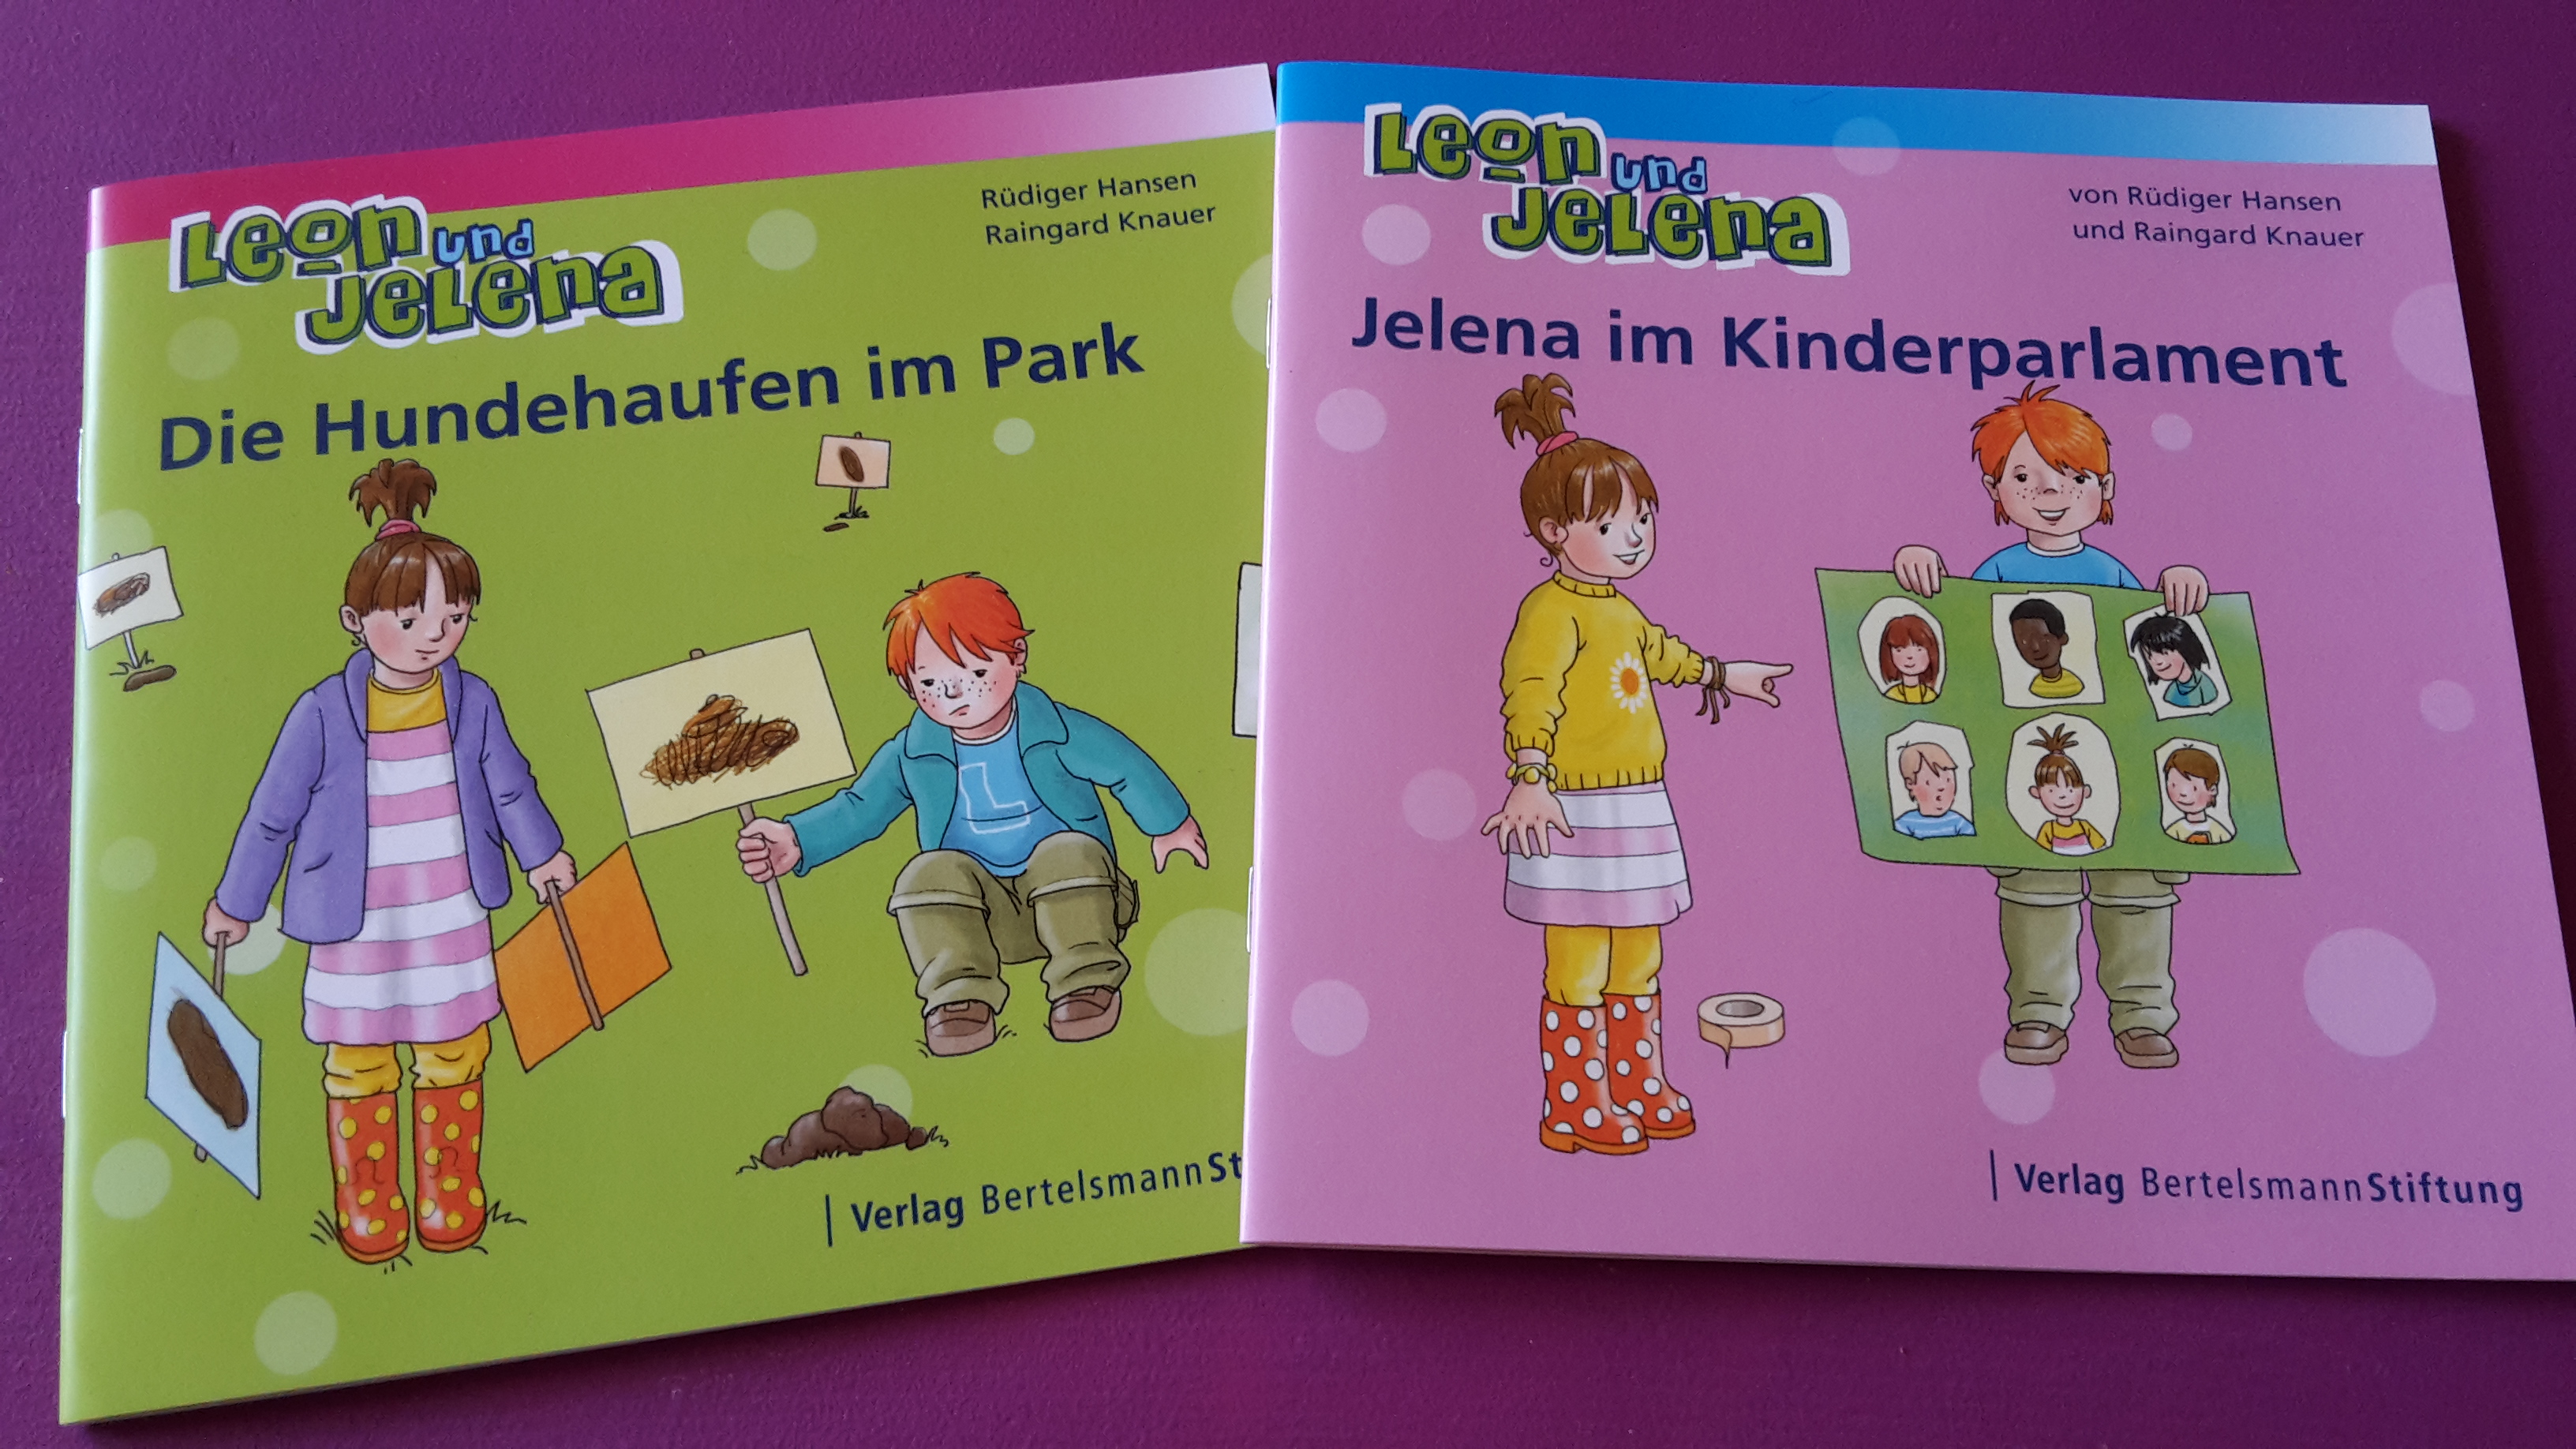 Leon und Jelena – Geschichten für Kinder